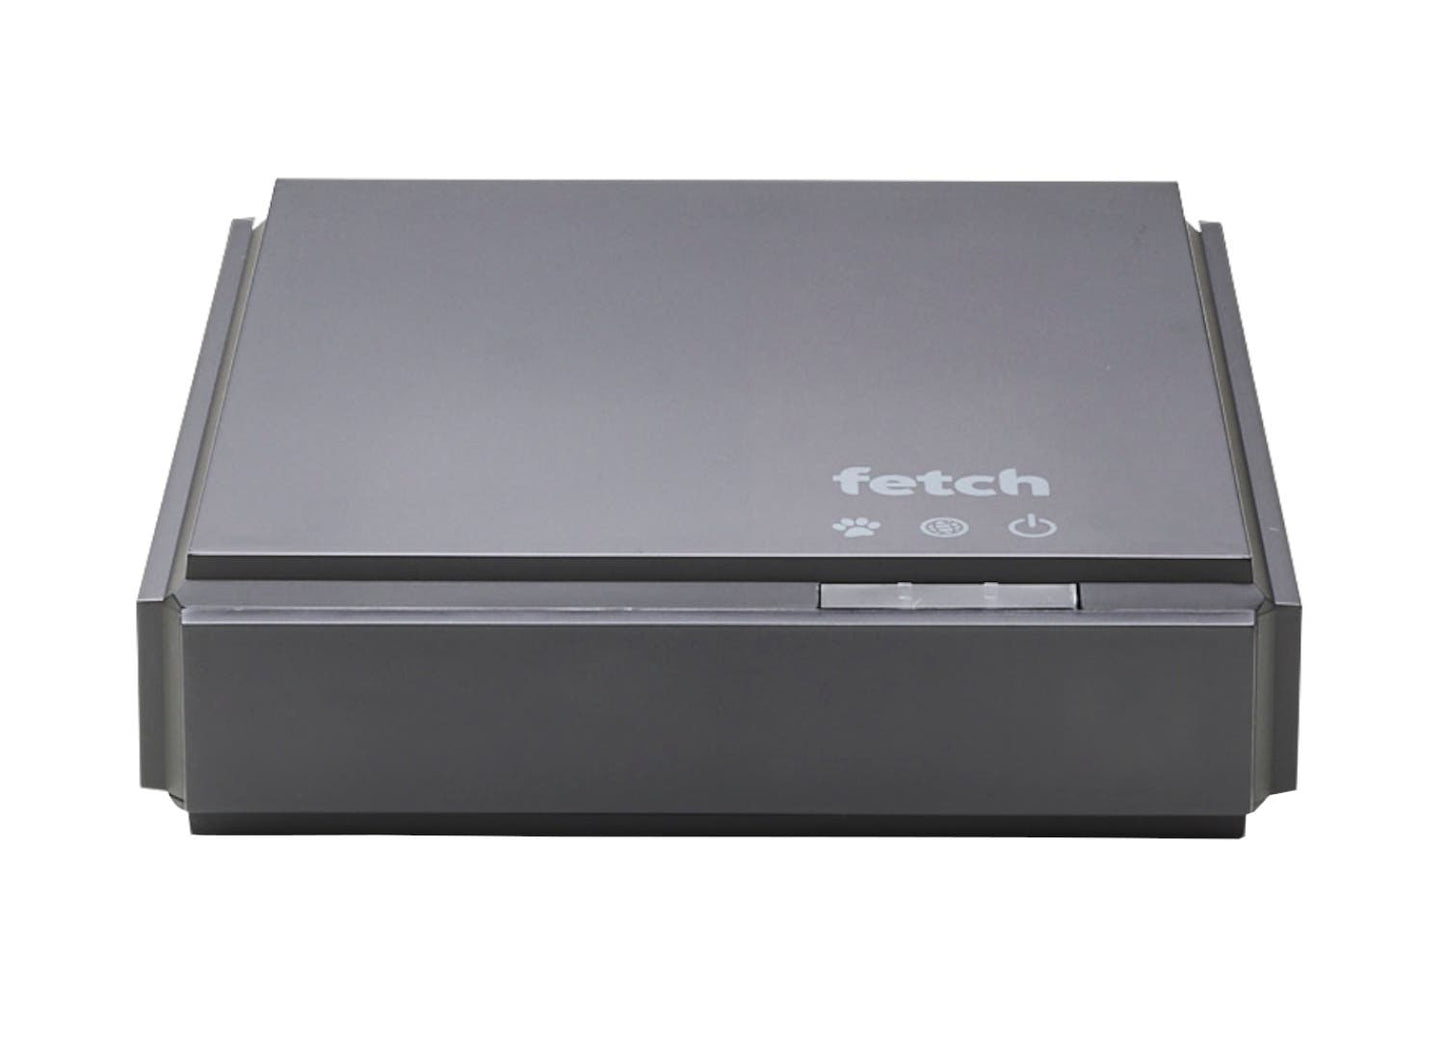 Fetch Mini 4K Set Top Box (Fetch TV)